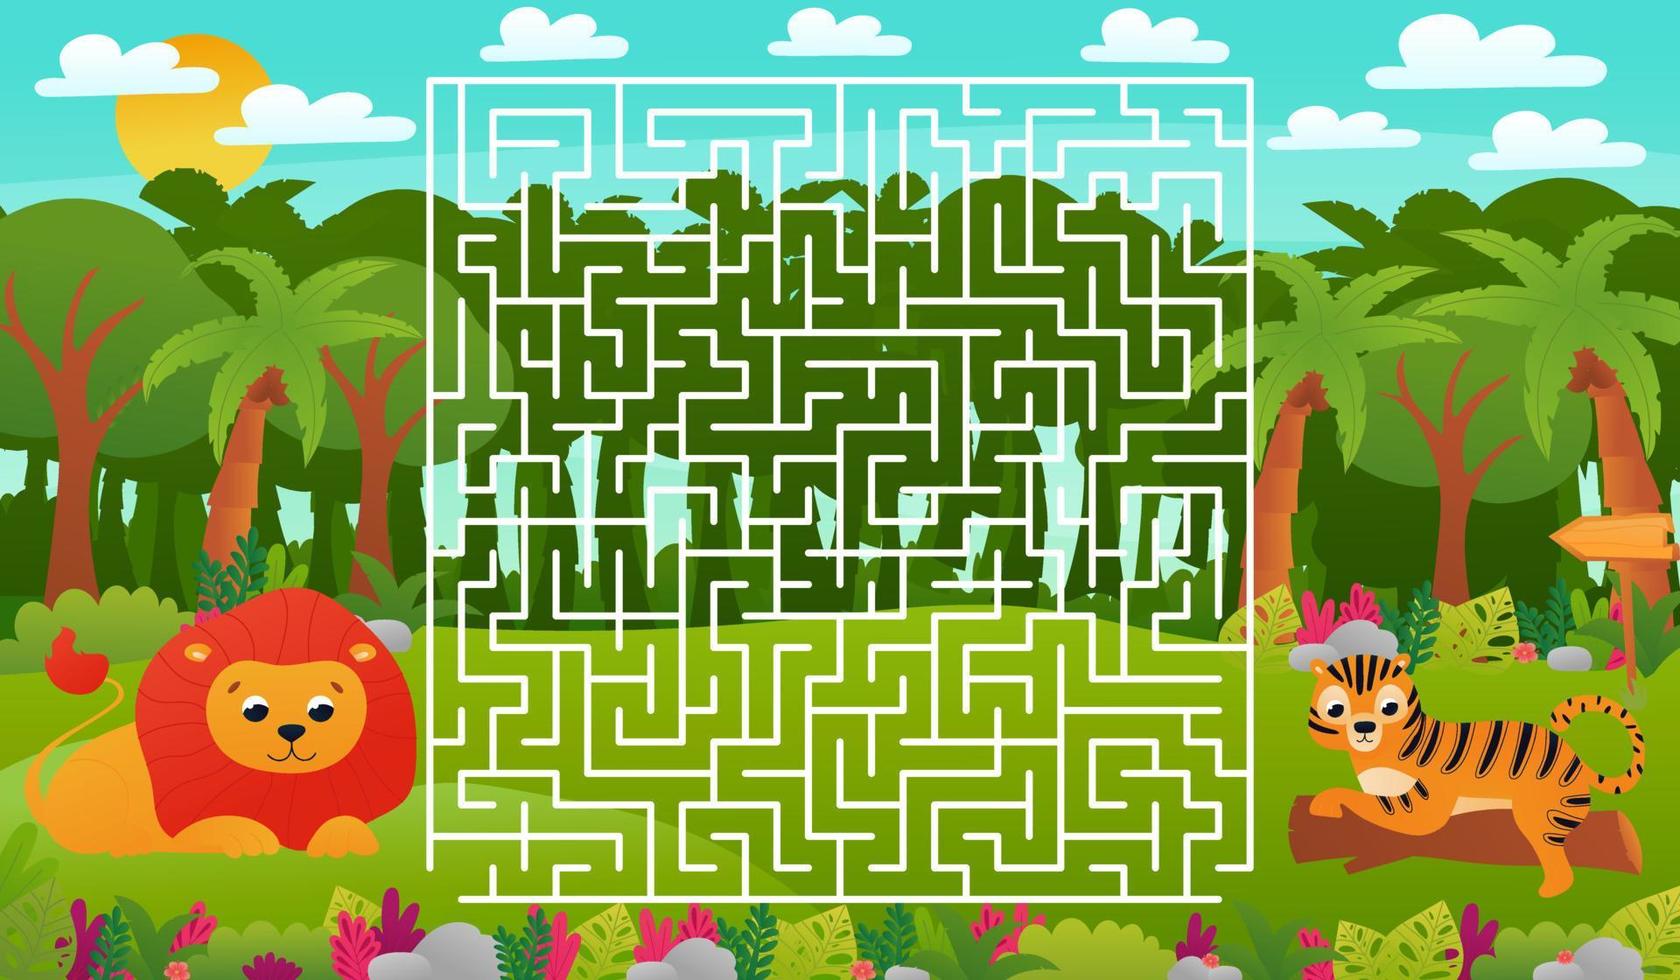 druckbares pädagogisches arbeitsblatt für kinder mit labyrinthpuzzle, tropische dschungeltiere wild lebende tiere mit süßem löwen vektor